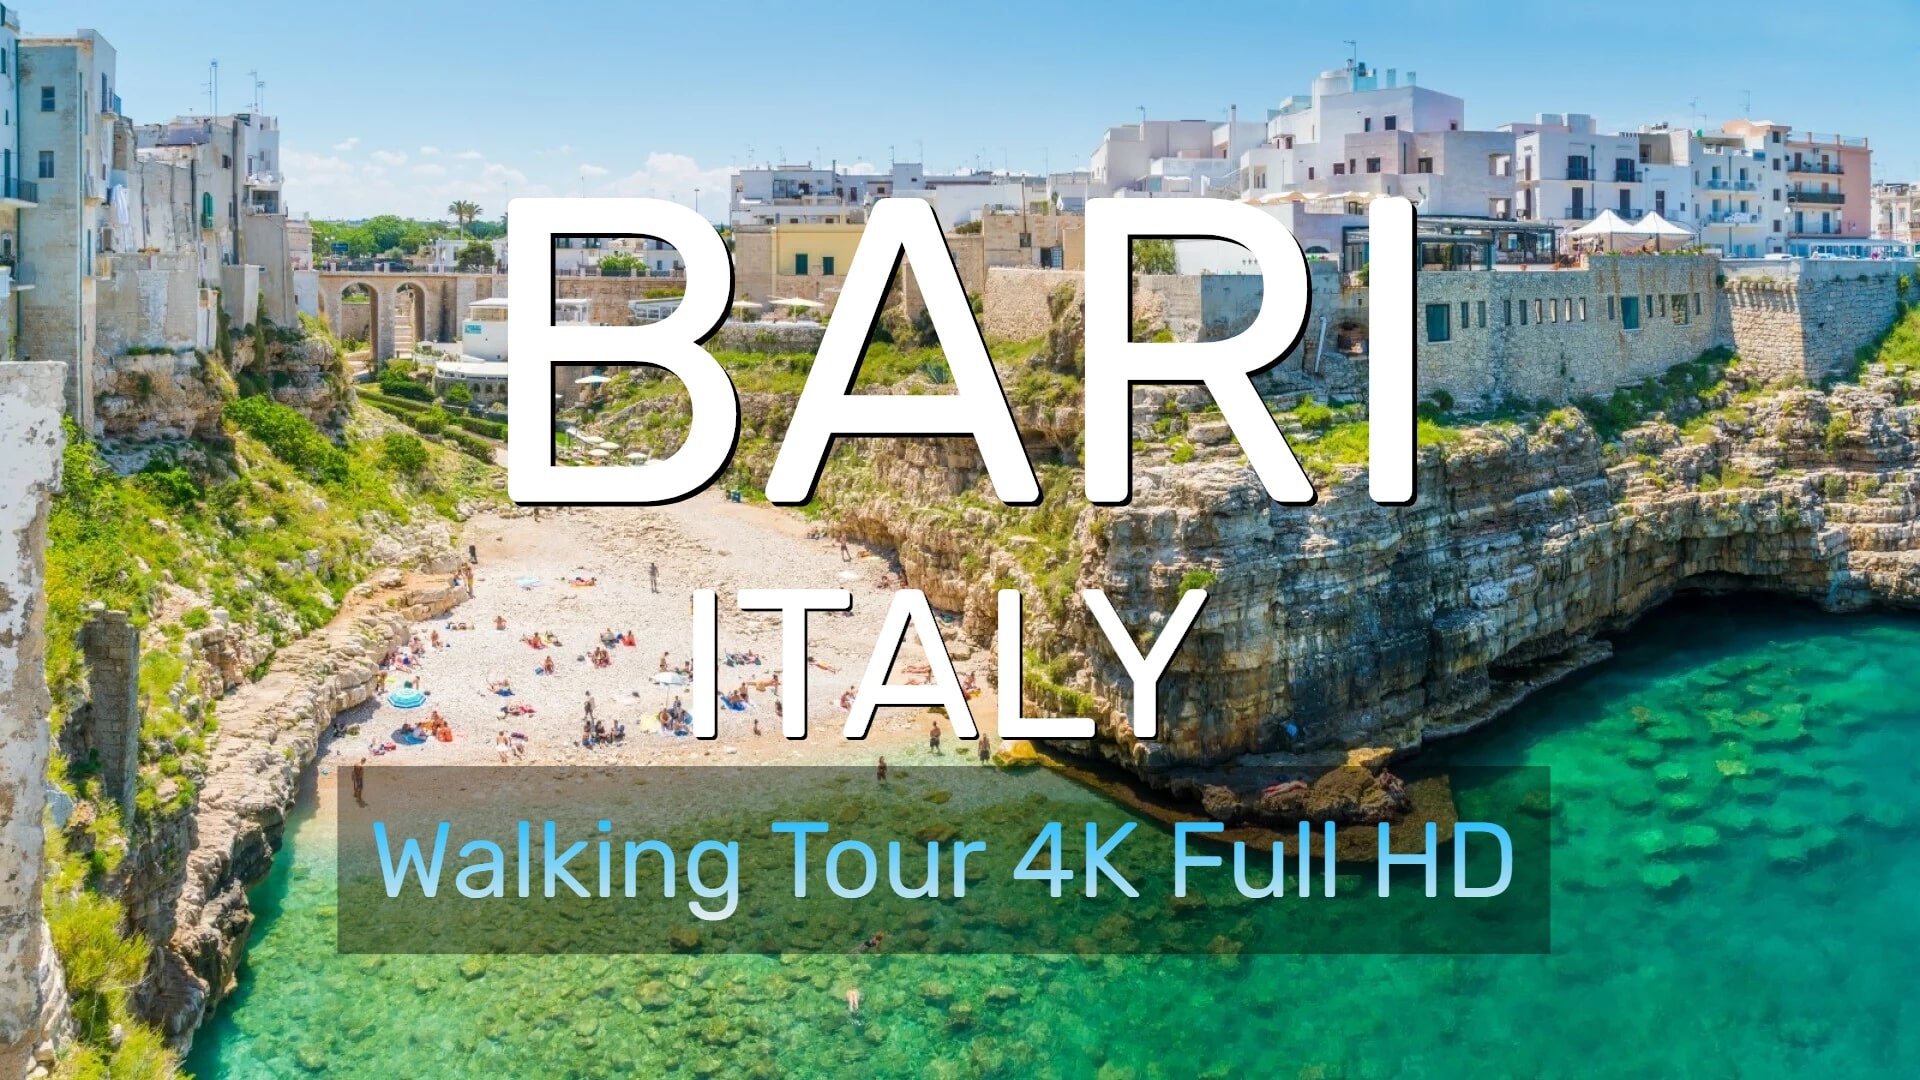 Бари столица столичного региона Апулия на юге Италии -  Bari Italy Walking Tour - Отдых в Италии